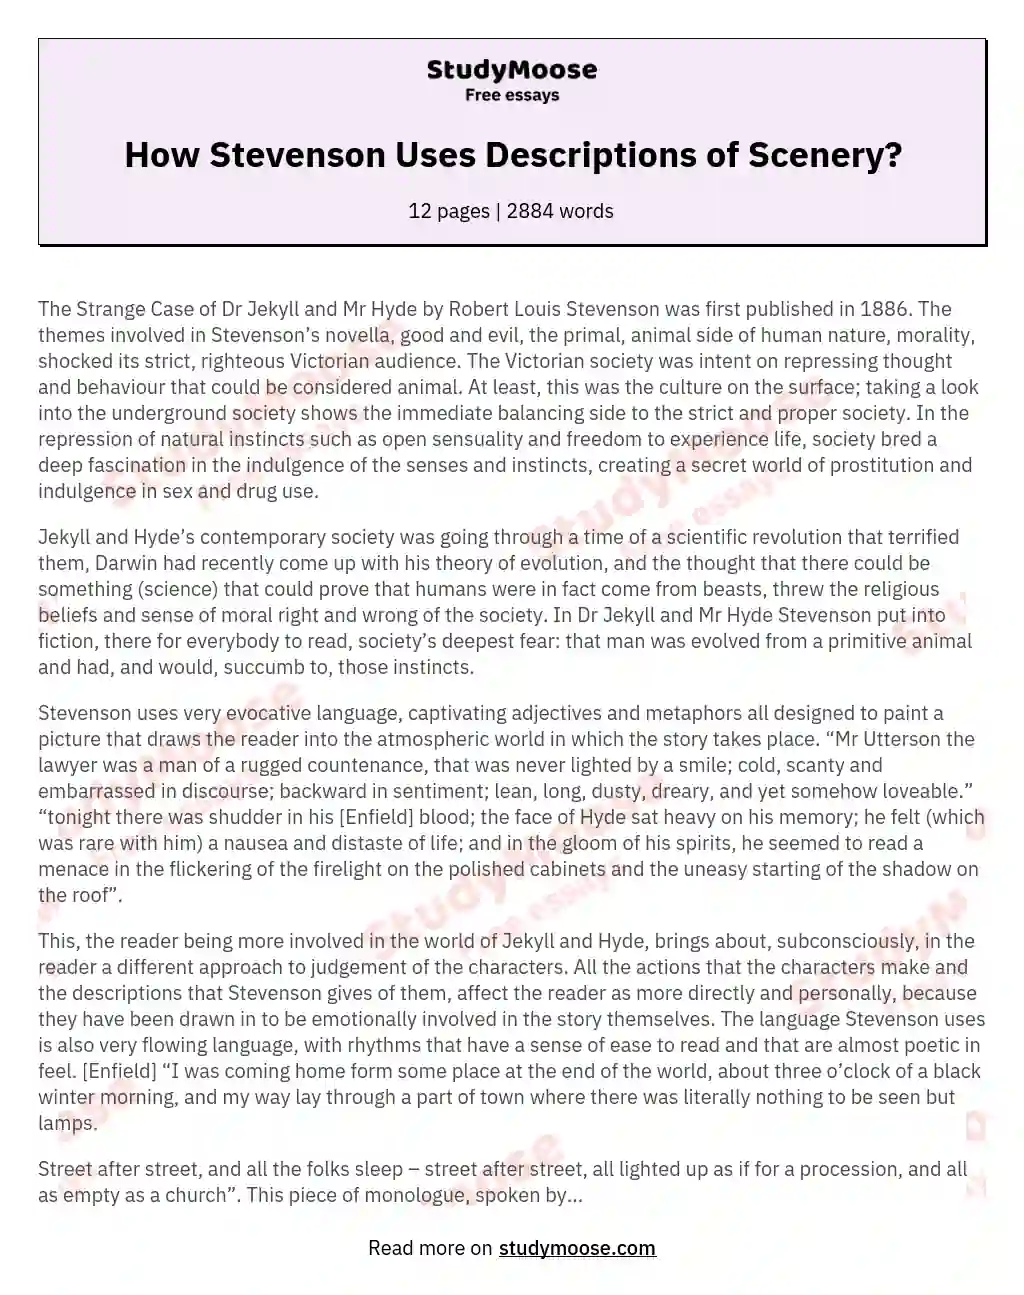 How Stevenson Uses Descriptions of Scenery?